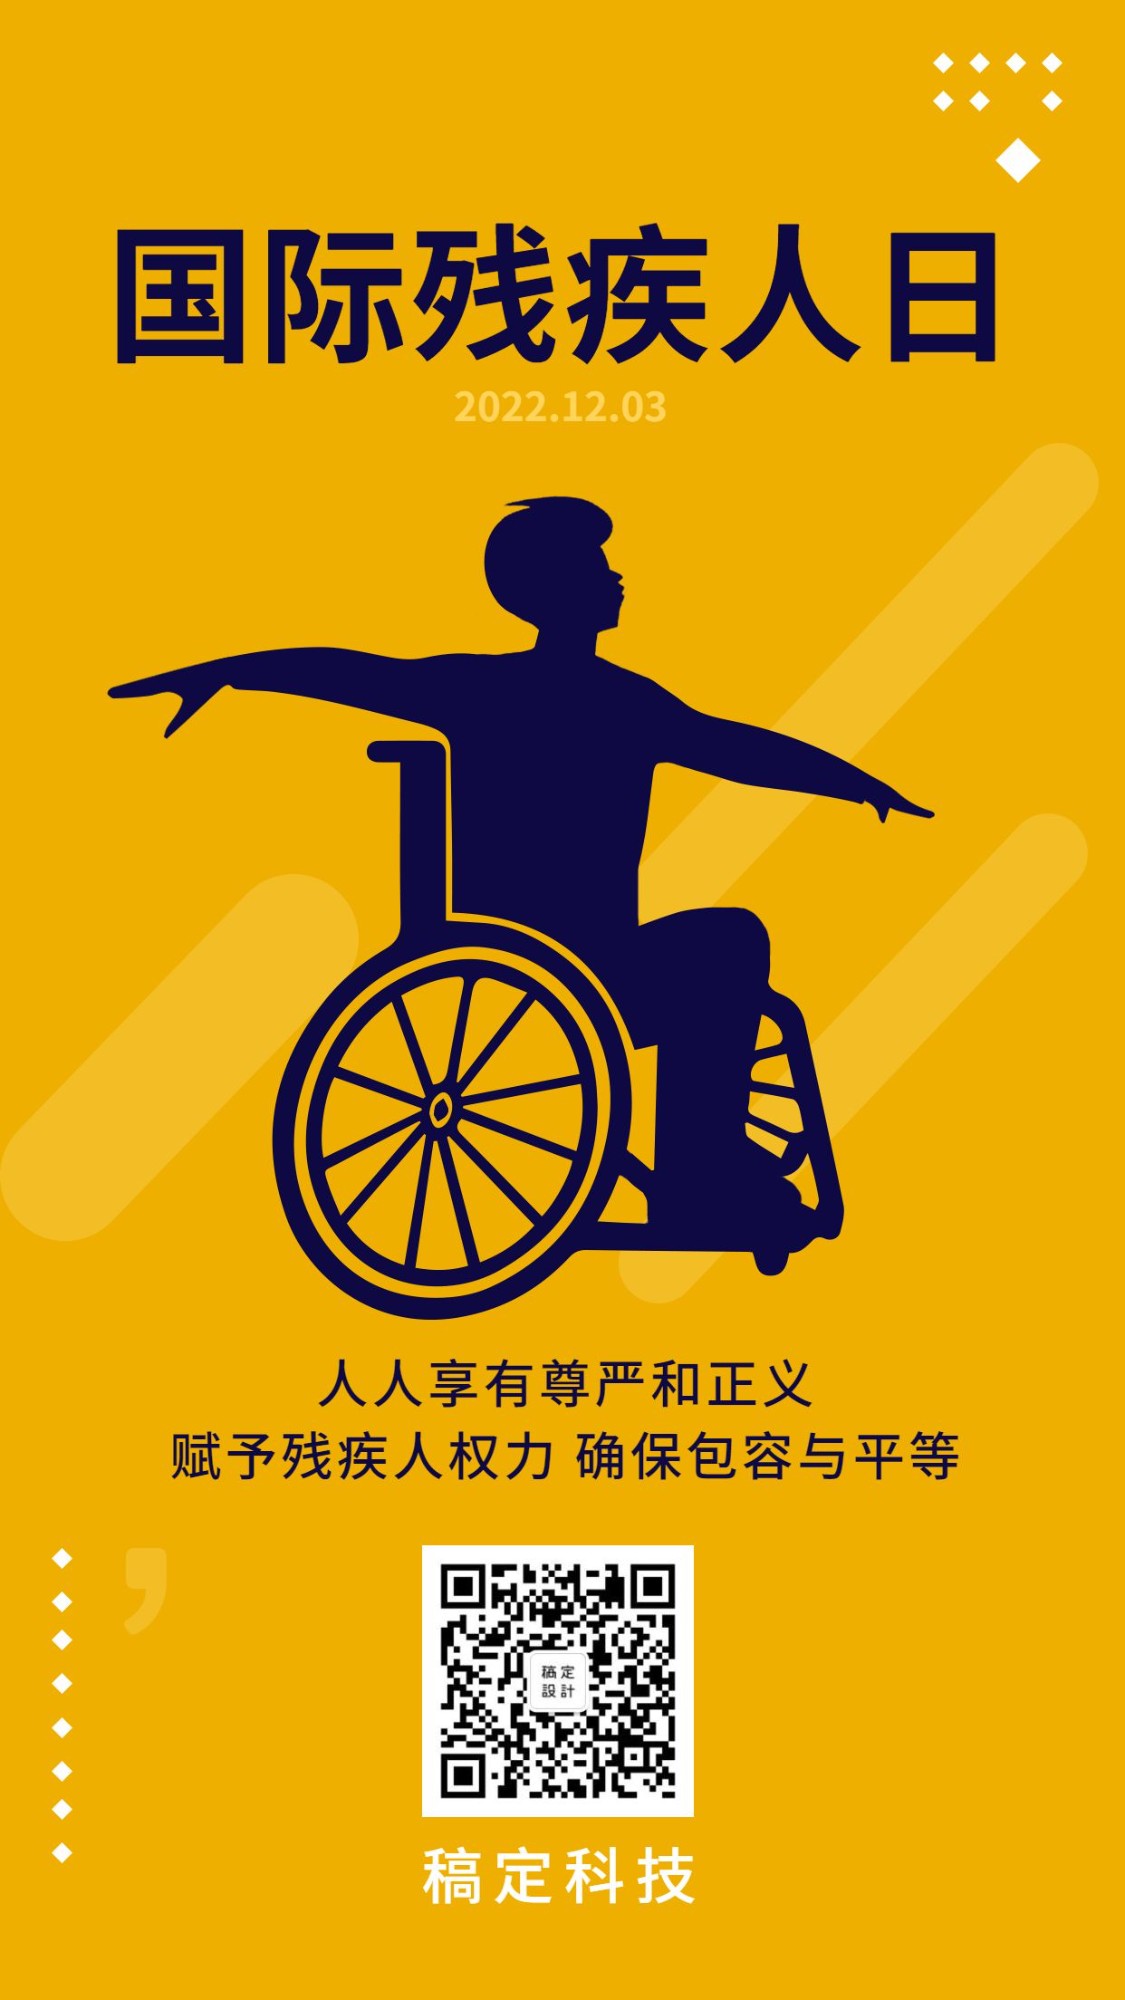 国际残疾人日公益宣传手绘手机海报预览效果